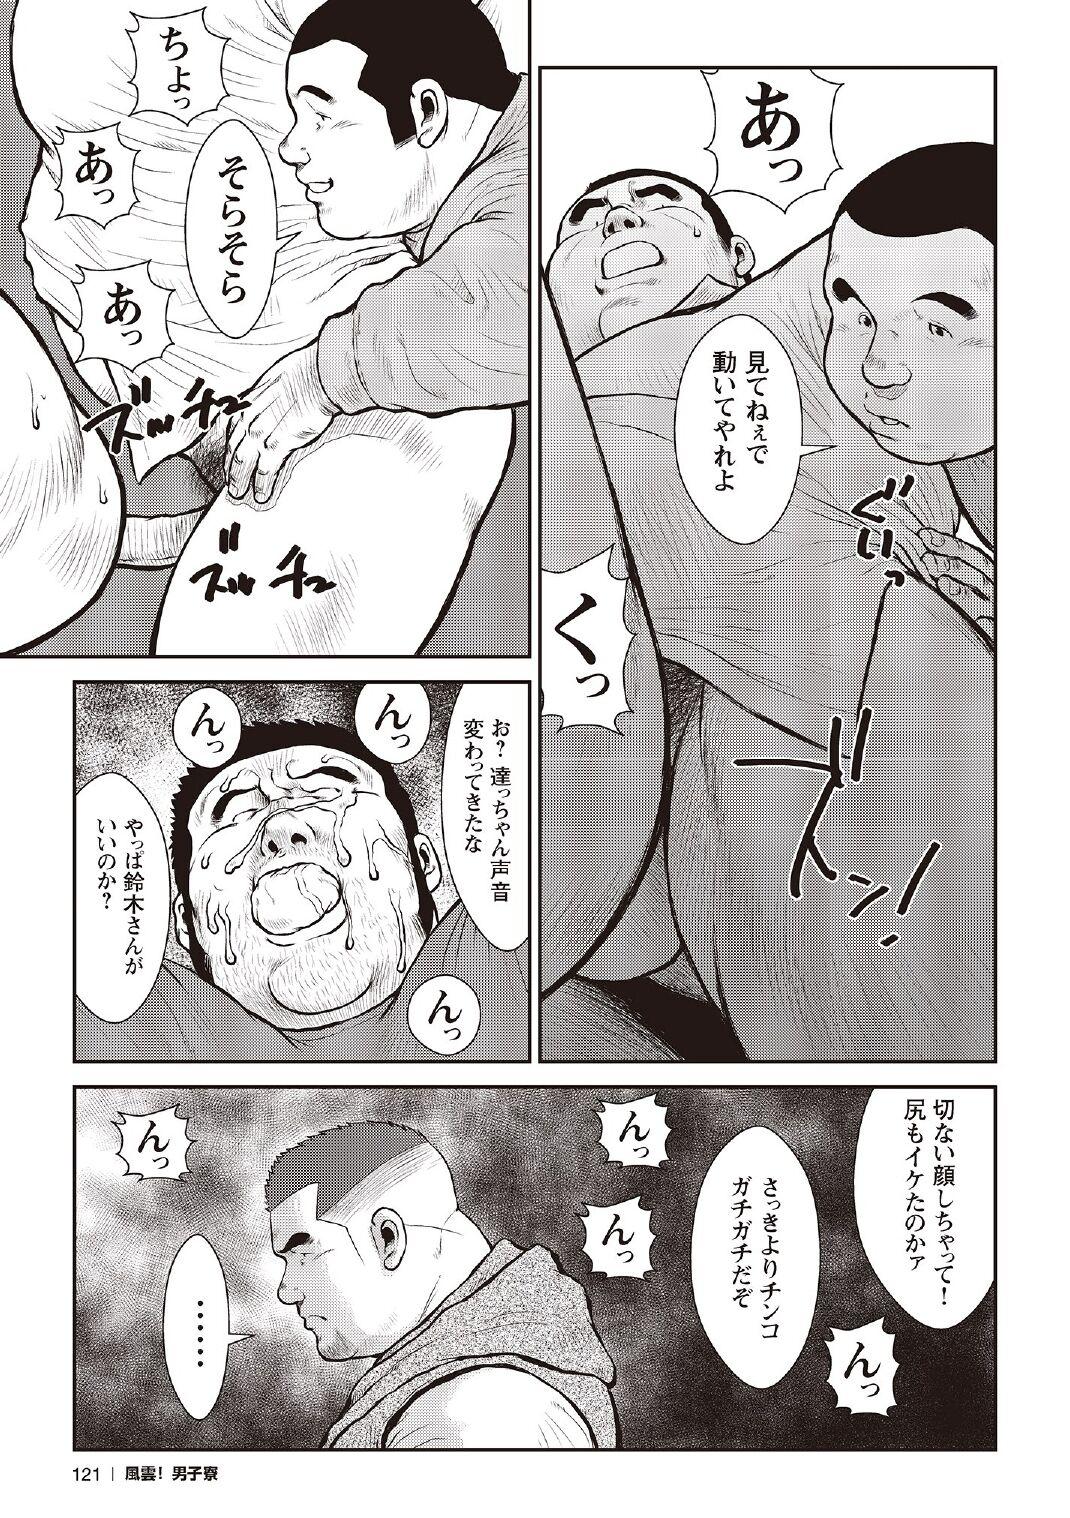 [Ebisubashi Seizou] Ebisubashi Seizou Tanpen Manga Shuu 2 Fuuun! Danshi Ryou [Bunsatsuban] PART 3 Bousou Hantou Taifuu Zensen Ch. 3 ~ Ch. 5 [Digital] 50